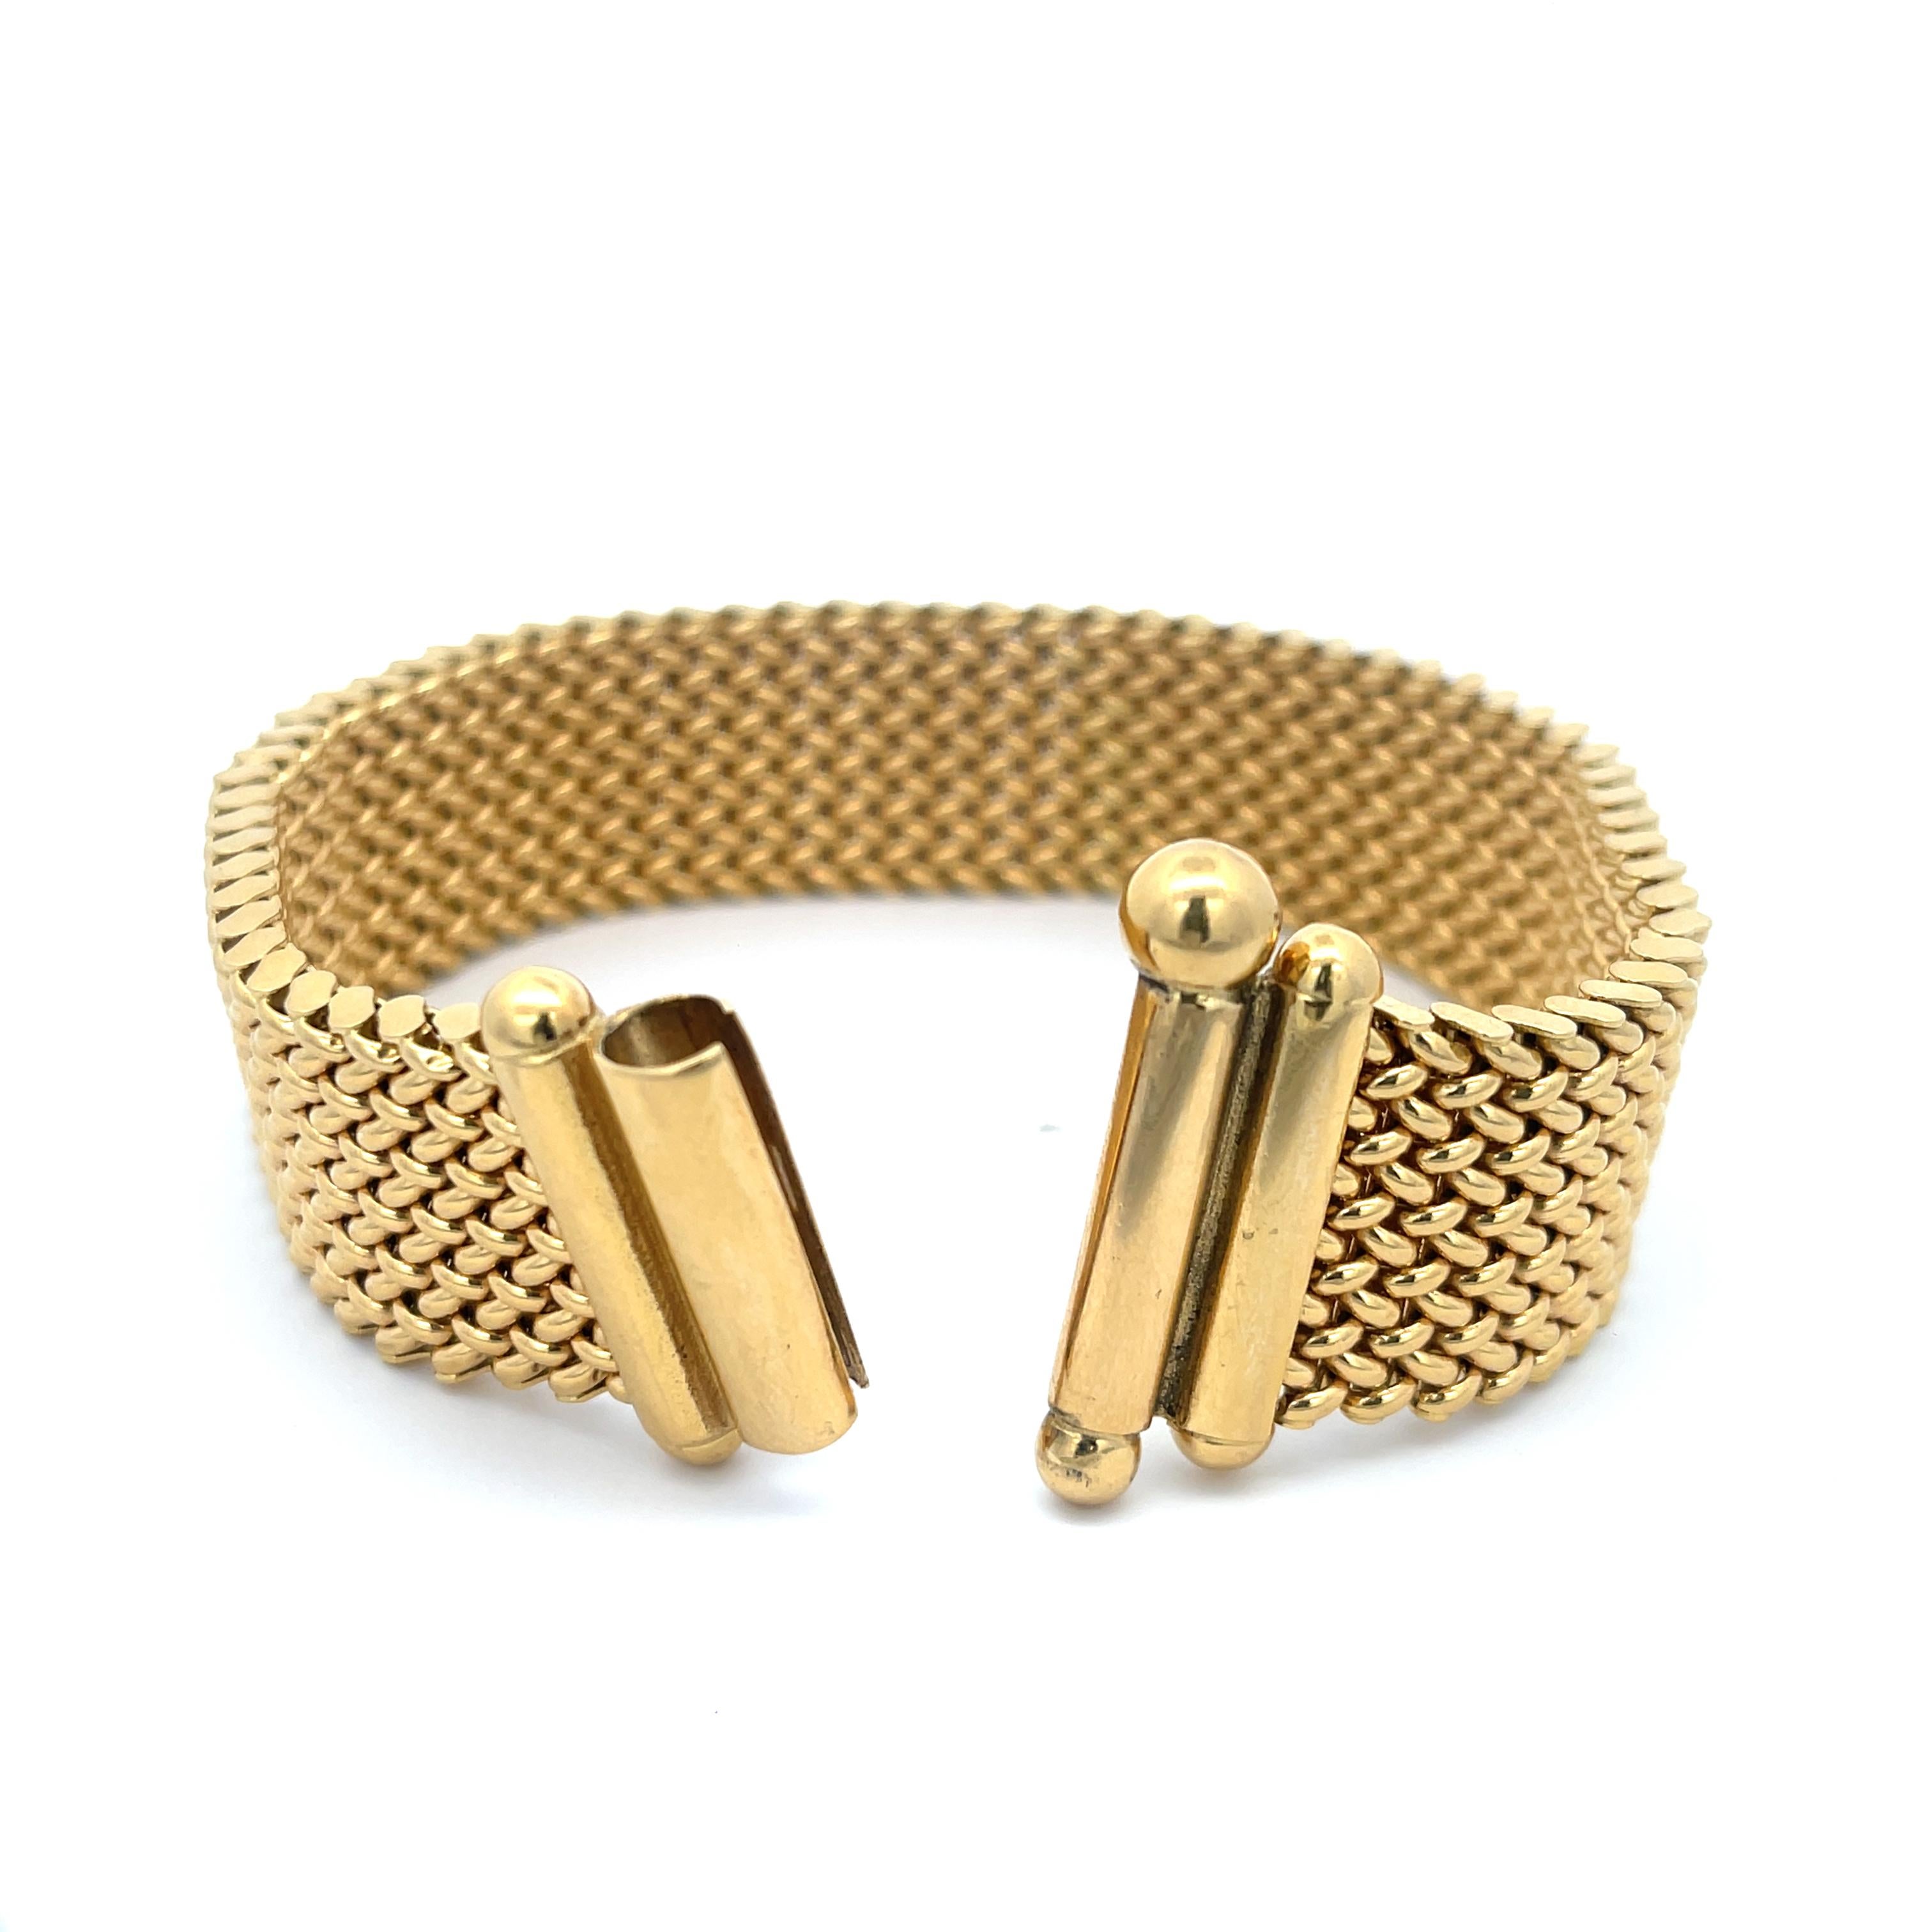 Wide Mesh Bracelet in 18K Yellow Gold. The bracelet is 8.5